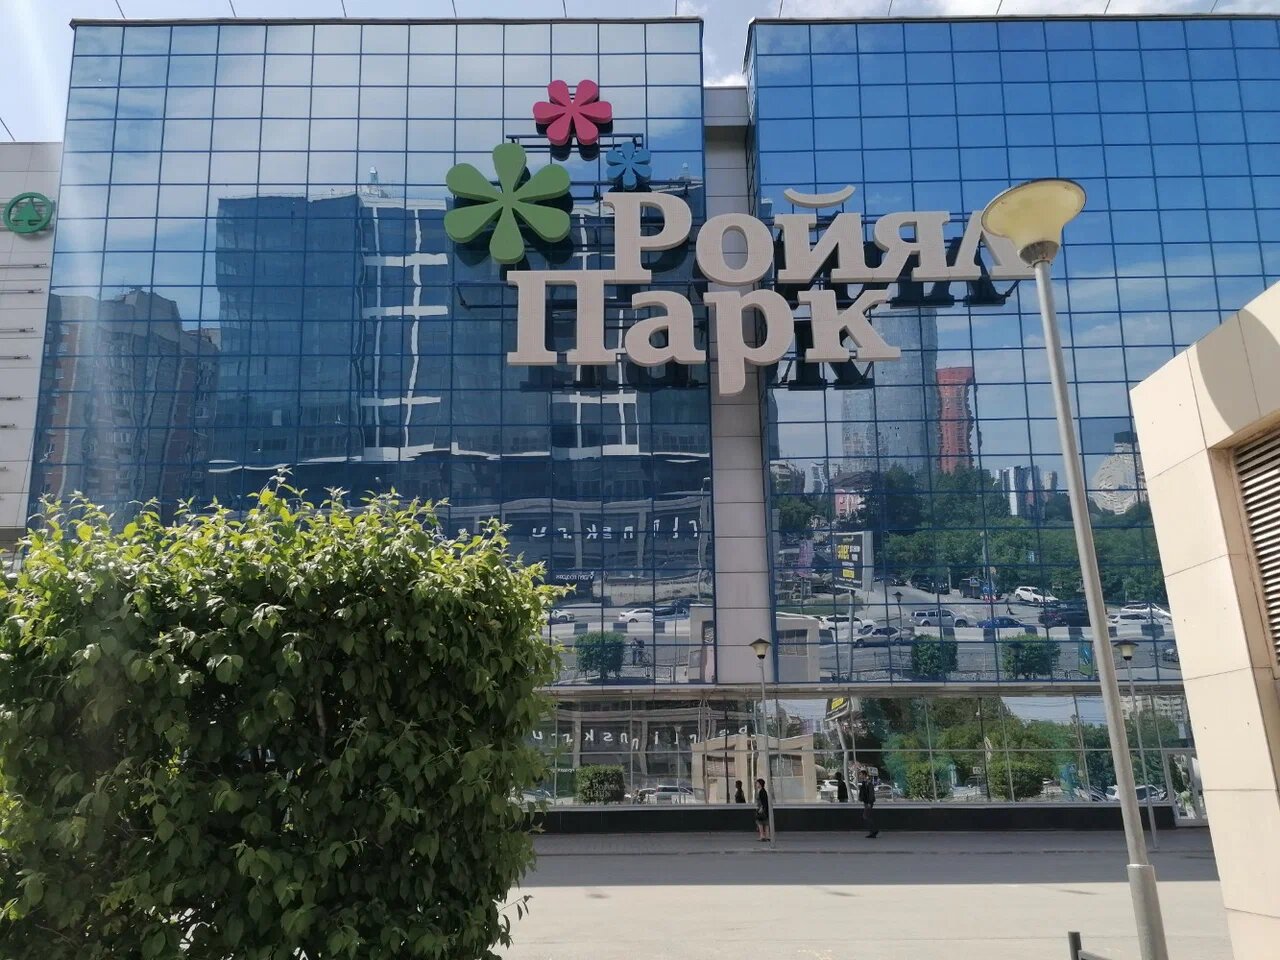 В Новосибирске снесли стелу в честь героев ВОВ ради строительства гостиницы